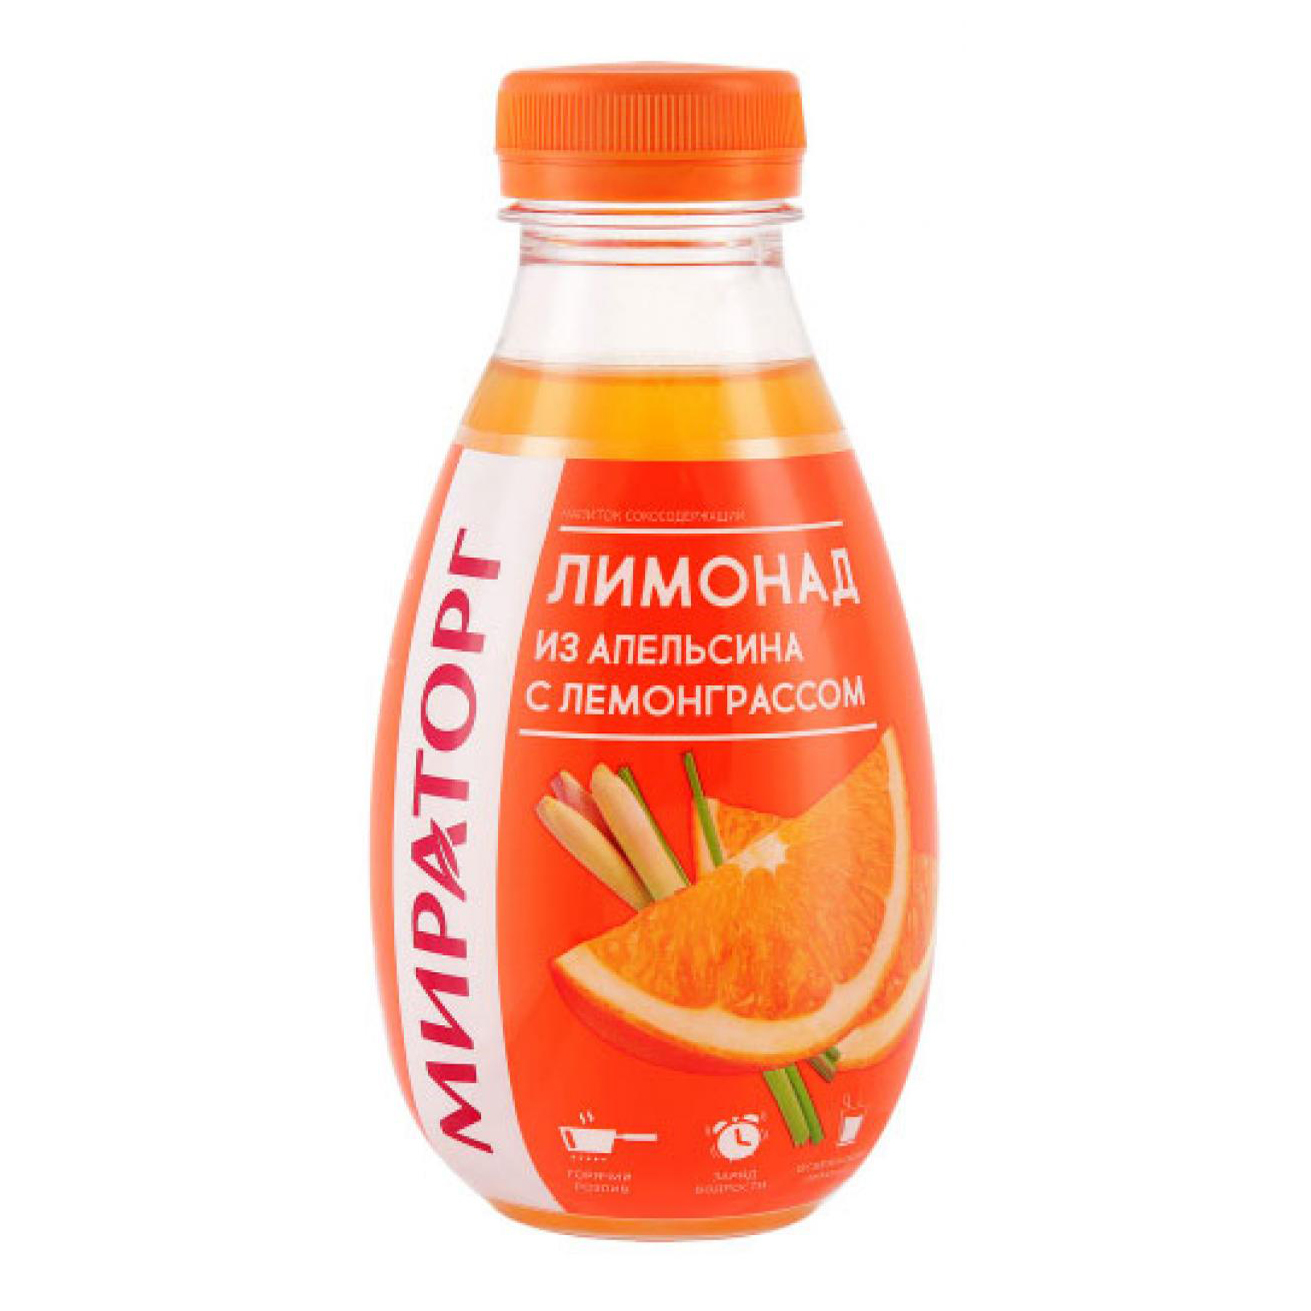 Газированный напиток Мираторг апельсин-лемонграсс 0,37 л